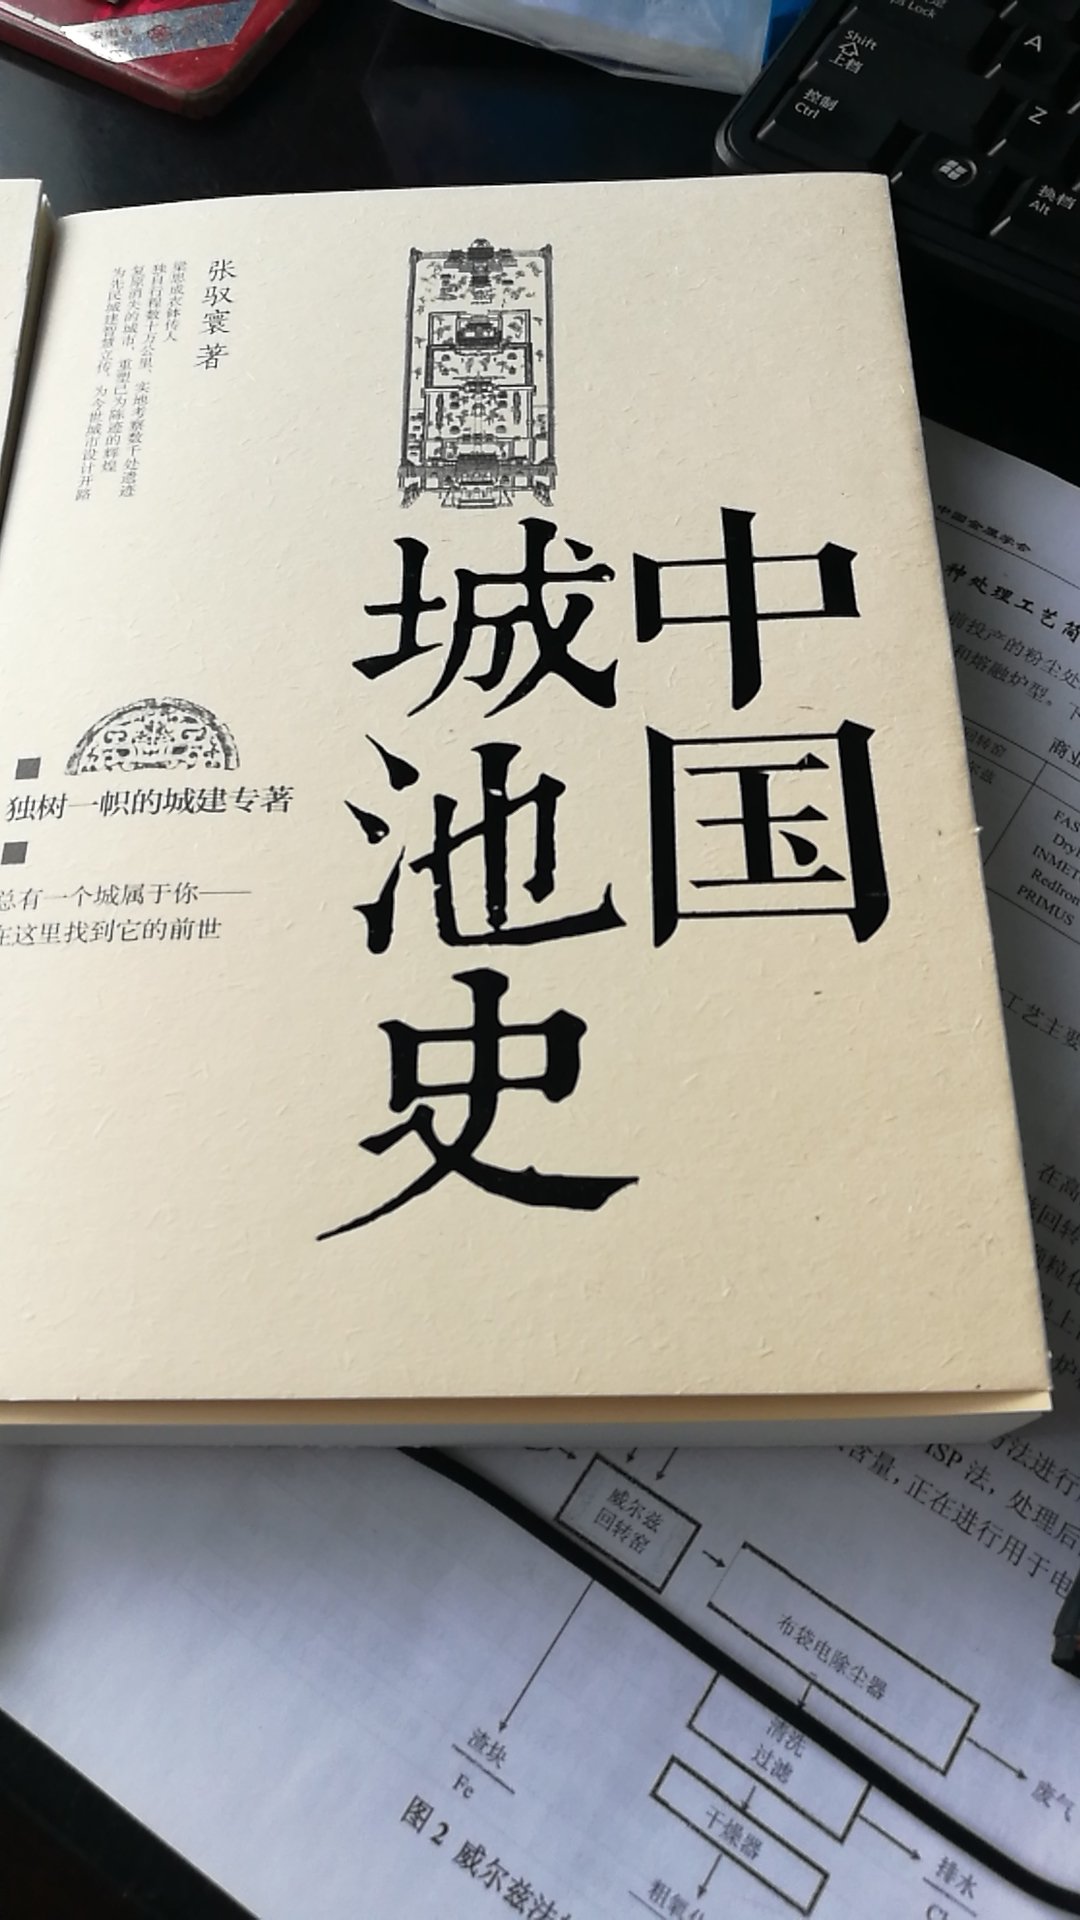 很有意思的书，值得每个人拥有。但我更喜欢中国城池史。